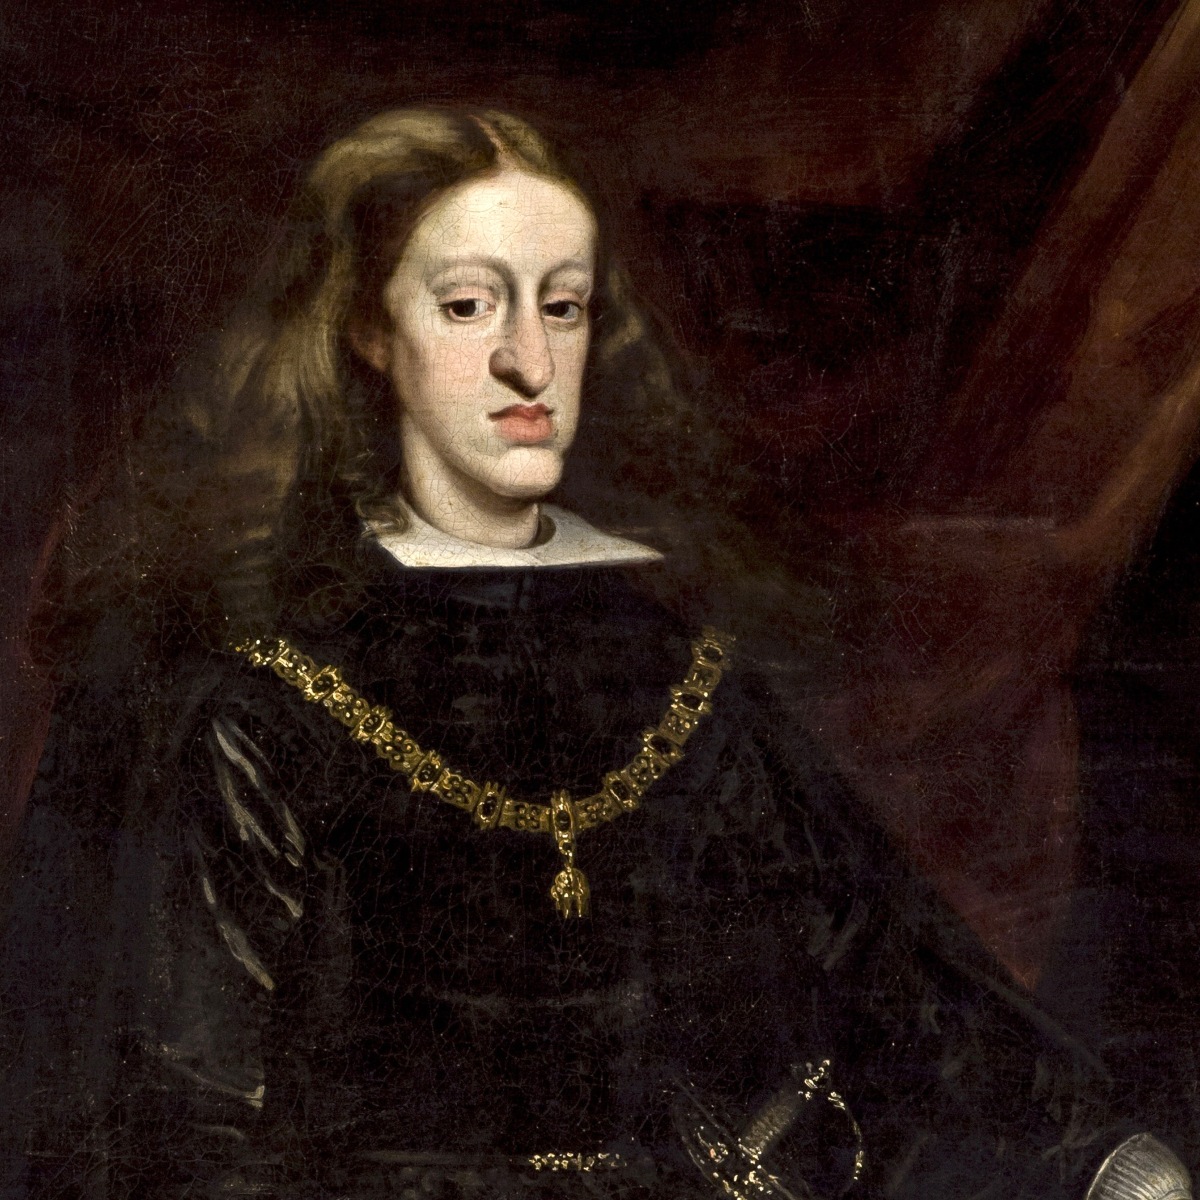 Habsburgo, la dinastía que tenía una deformidad por el incesto